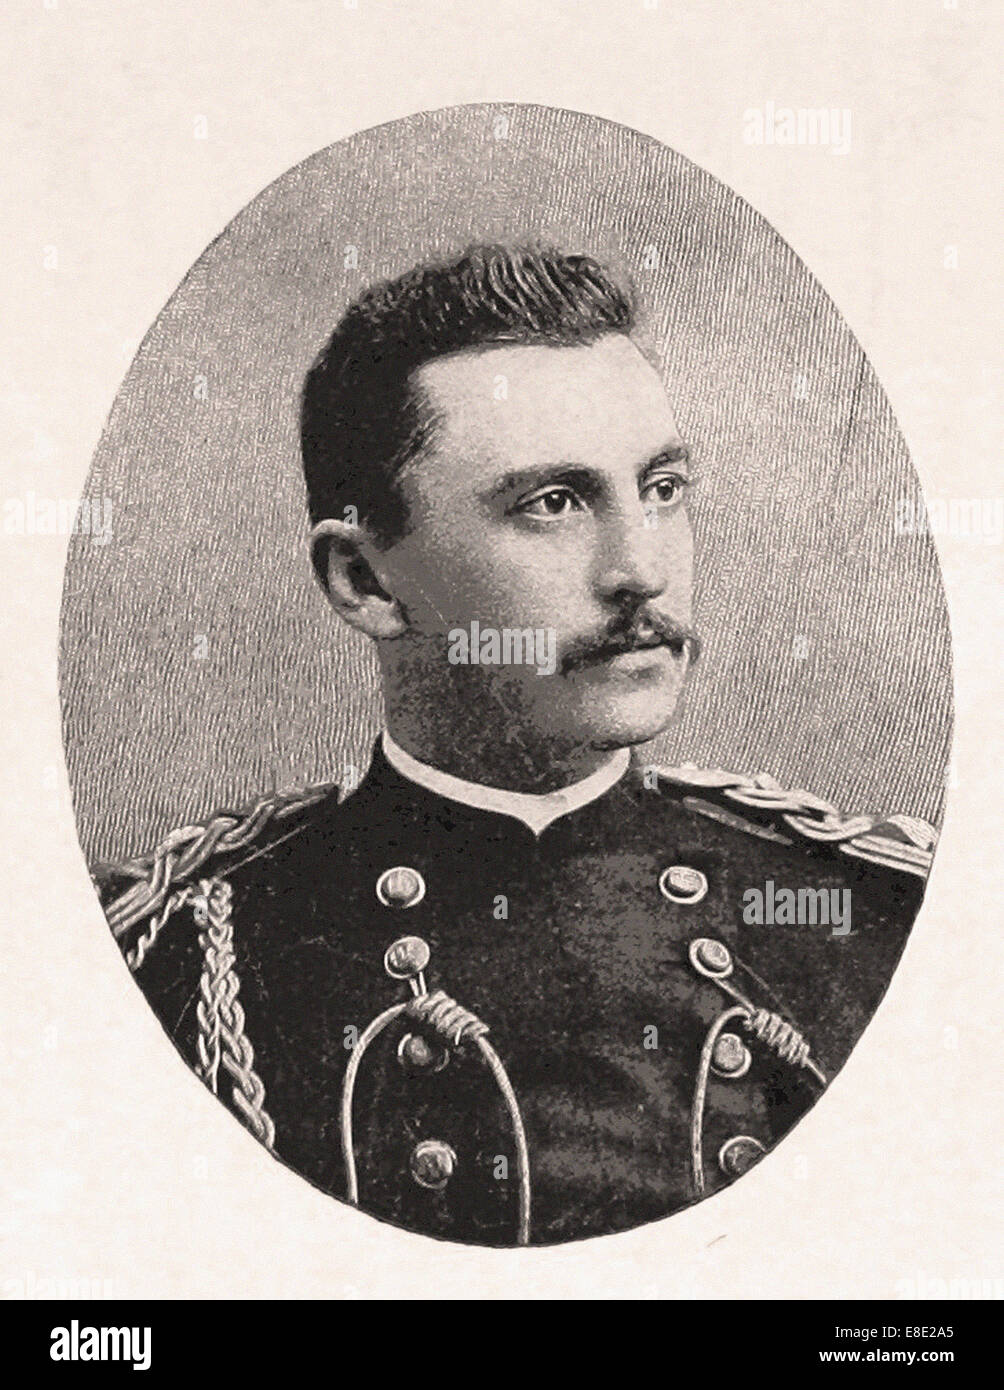 Portrait du capitaine Bucky O'Neill - Gravure - XIX ème siècle Banque D'Images